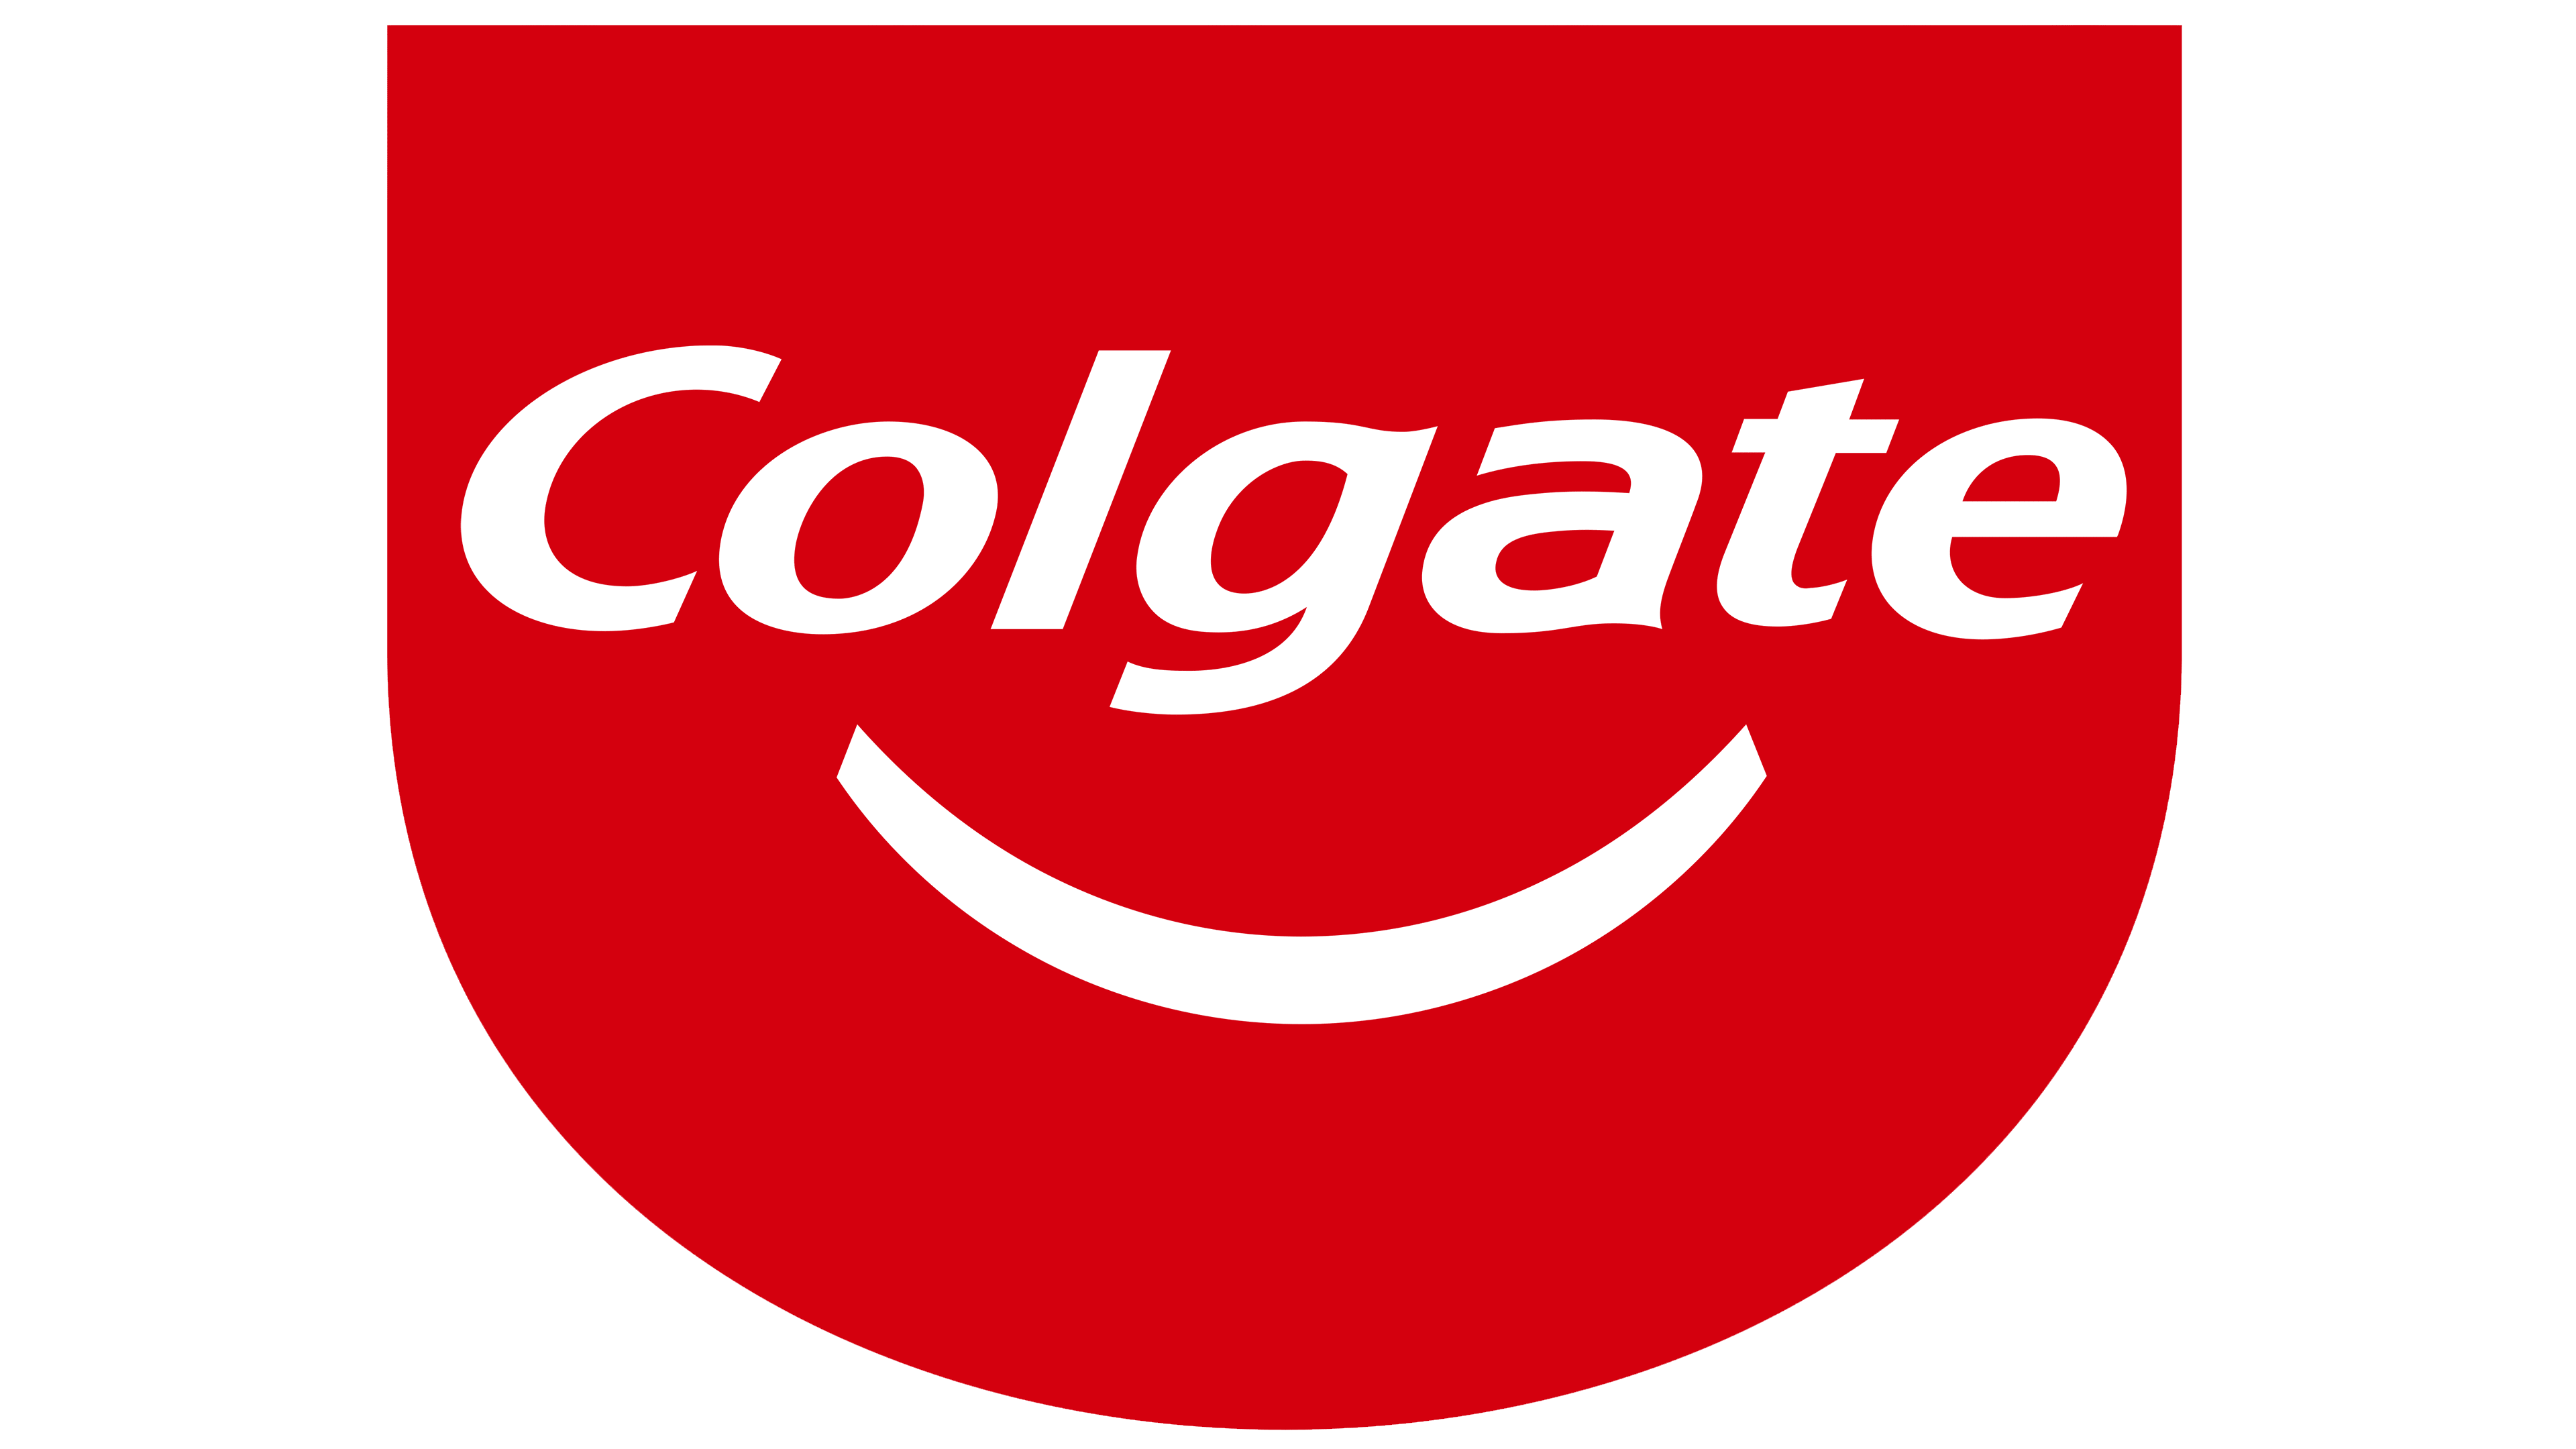 Logotipo de Colgate Descargar imagen PNG Transparente